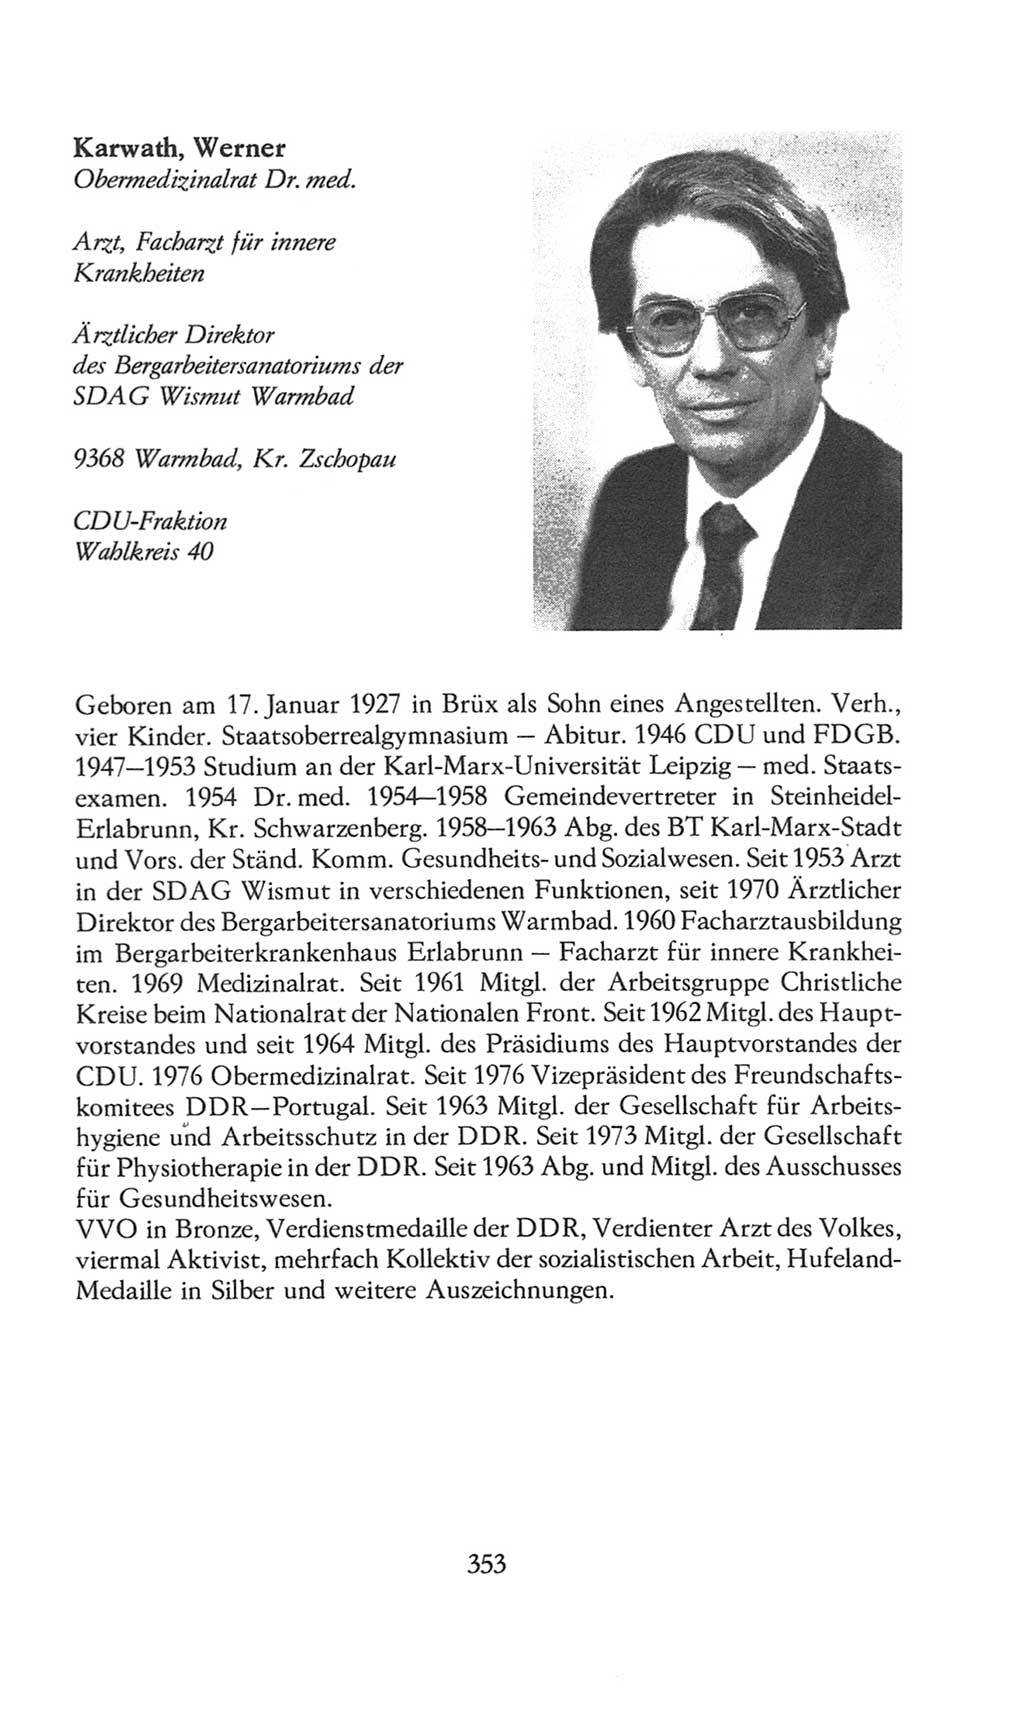 Volkskammer (VK) der Deutschen Demokratischen Republik (DDR), 8. Wahlperiode 1981-1986, Seite 353 (VK. DDR 8. WP. 1981-1986, S. 353)